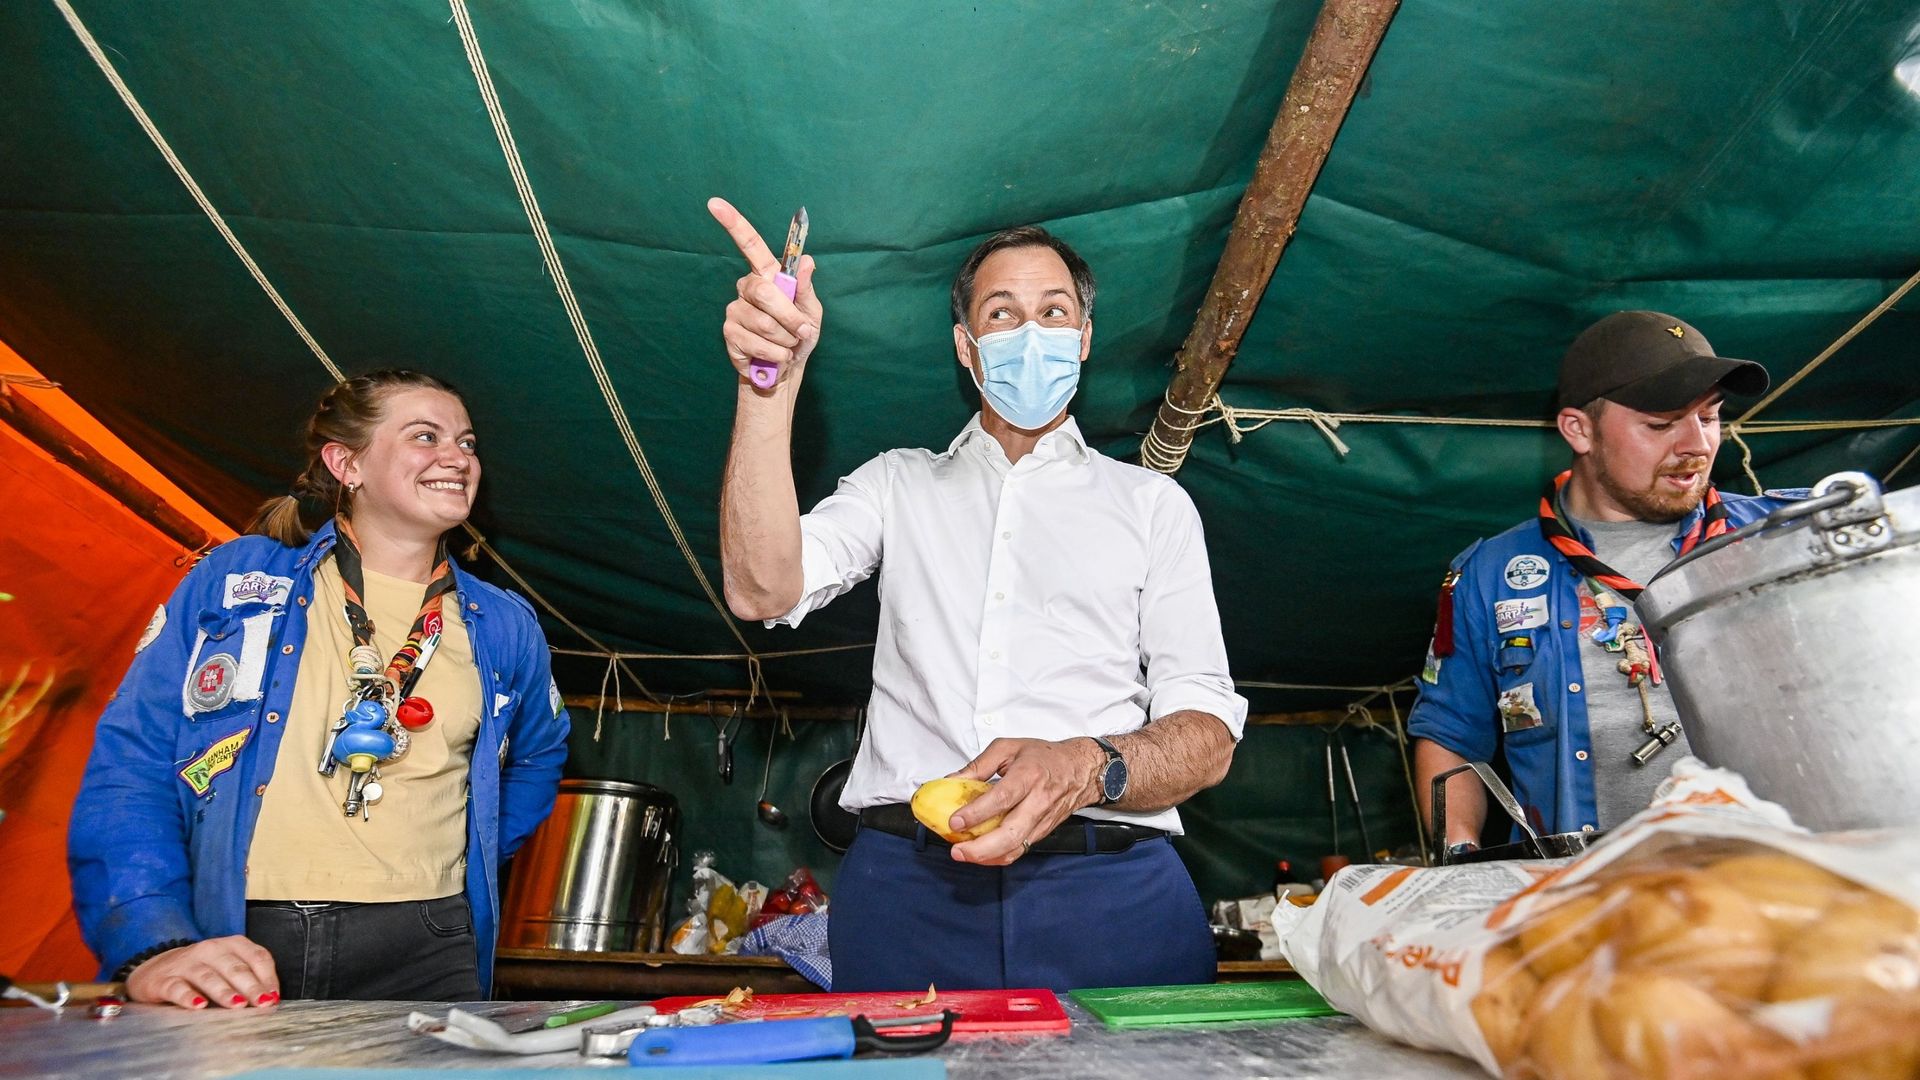 Le Premier ministre Alexander De Croo aide l'équipe de cuisine lors d'une visite d'un camp d'été des mouvements de jeunesse francophones à Faimes, mercredi 07 juillet 2021.